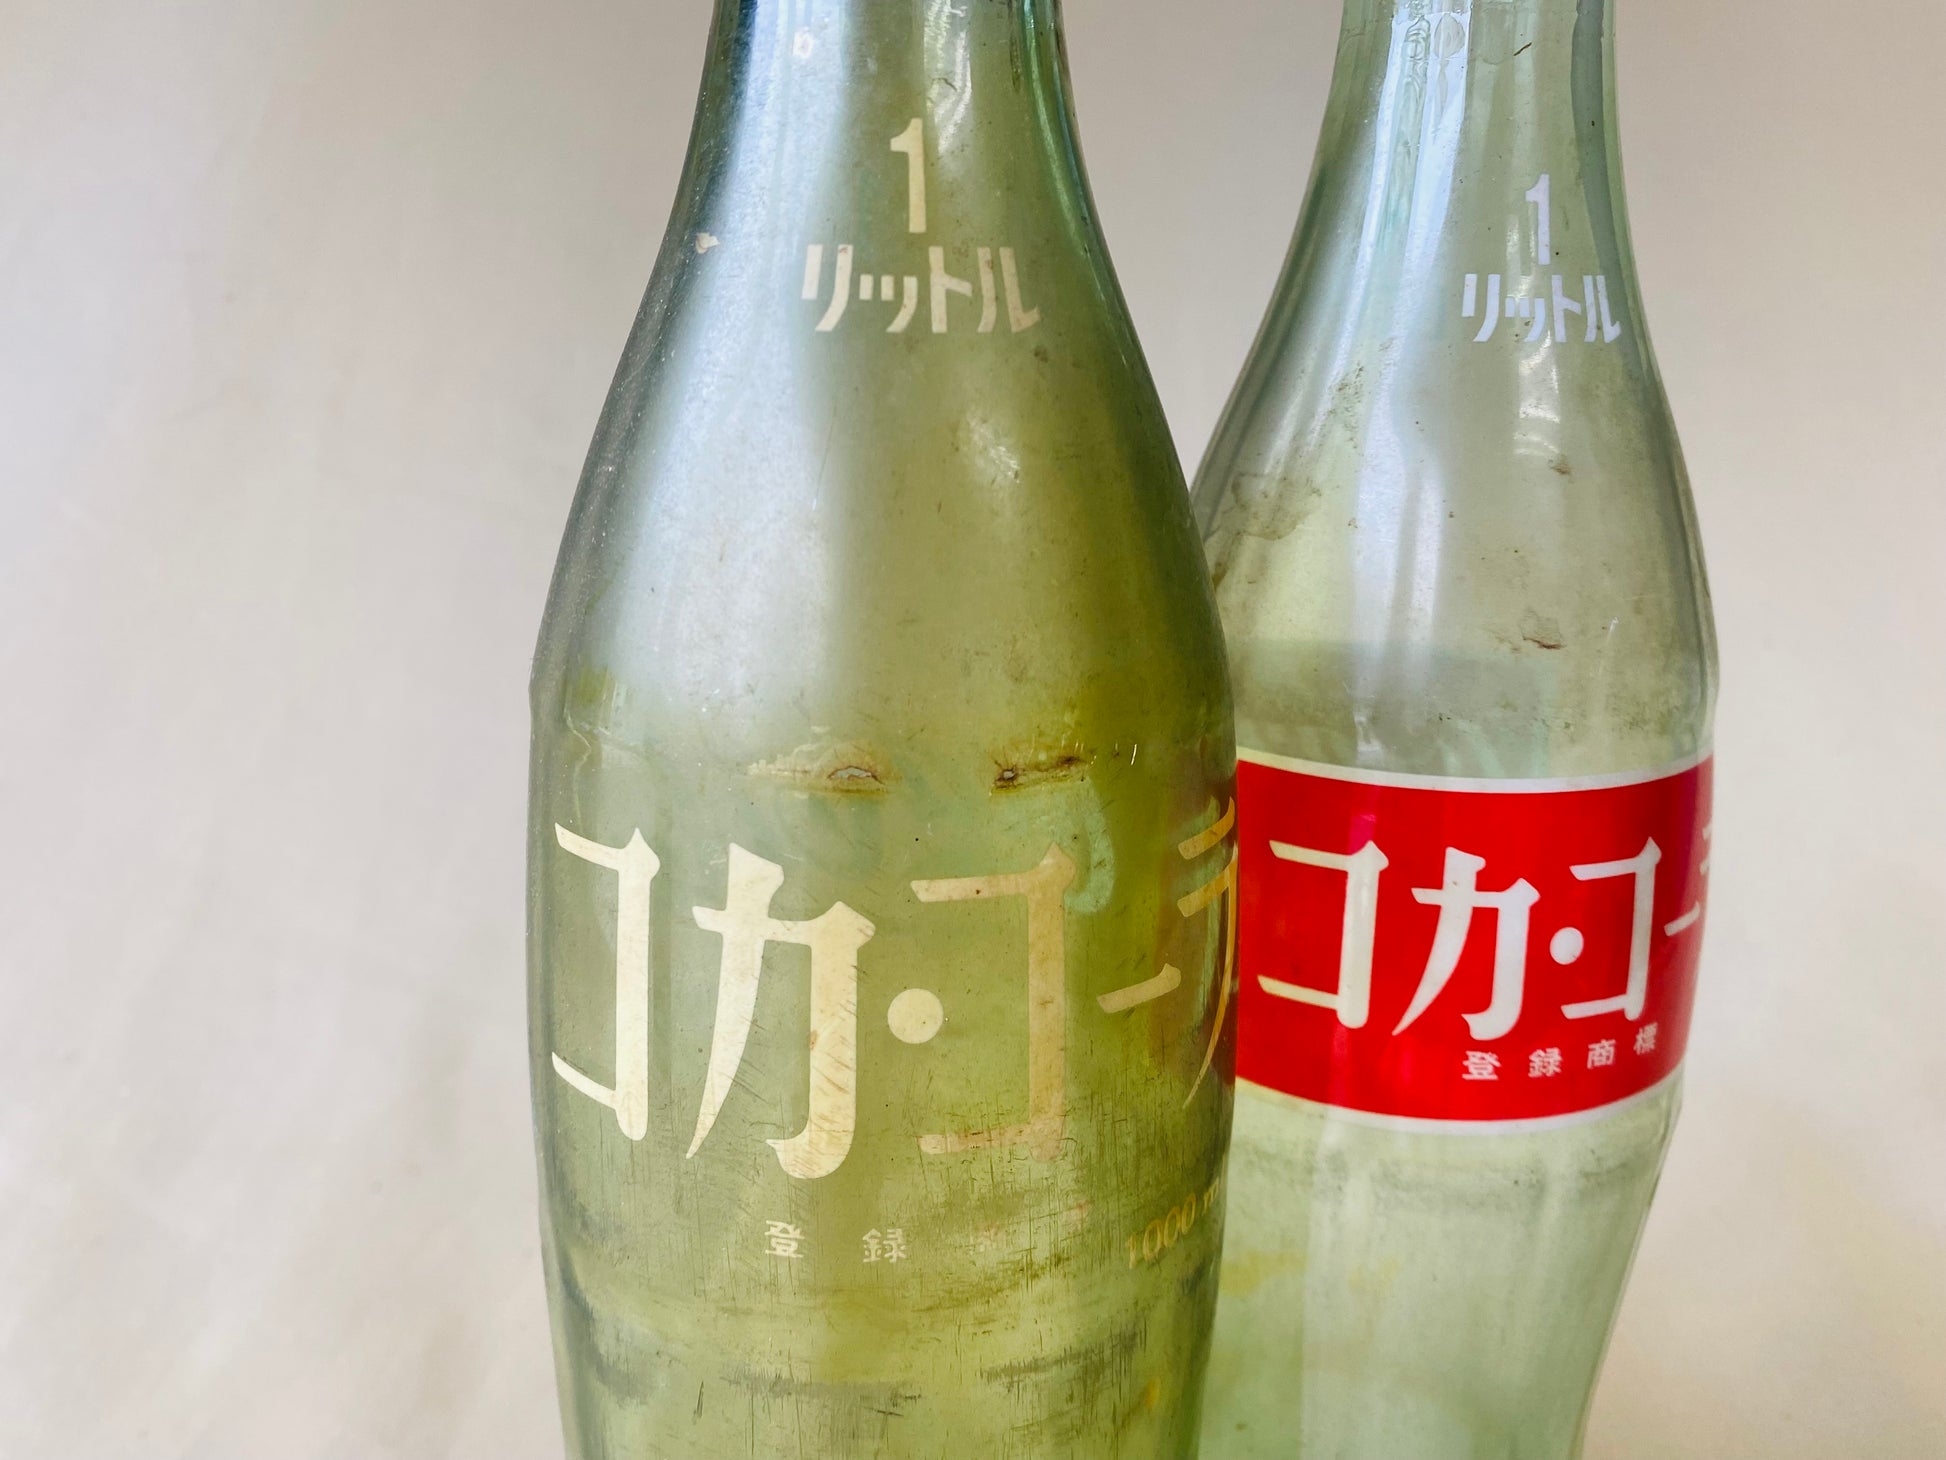 CocaCola 1 litre glass bottle